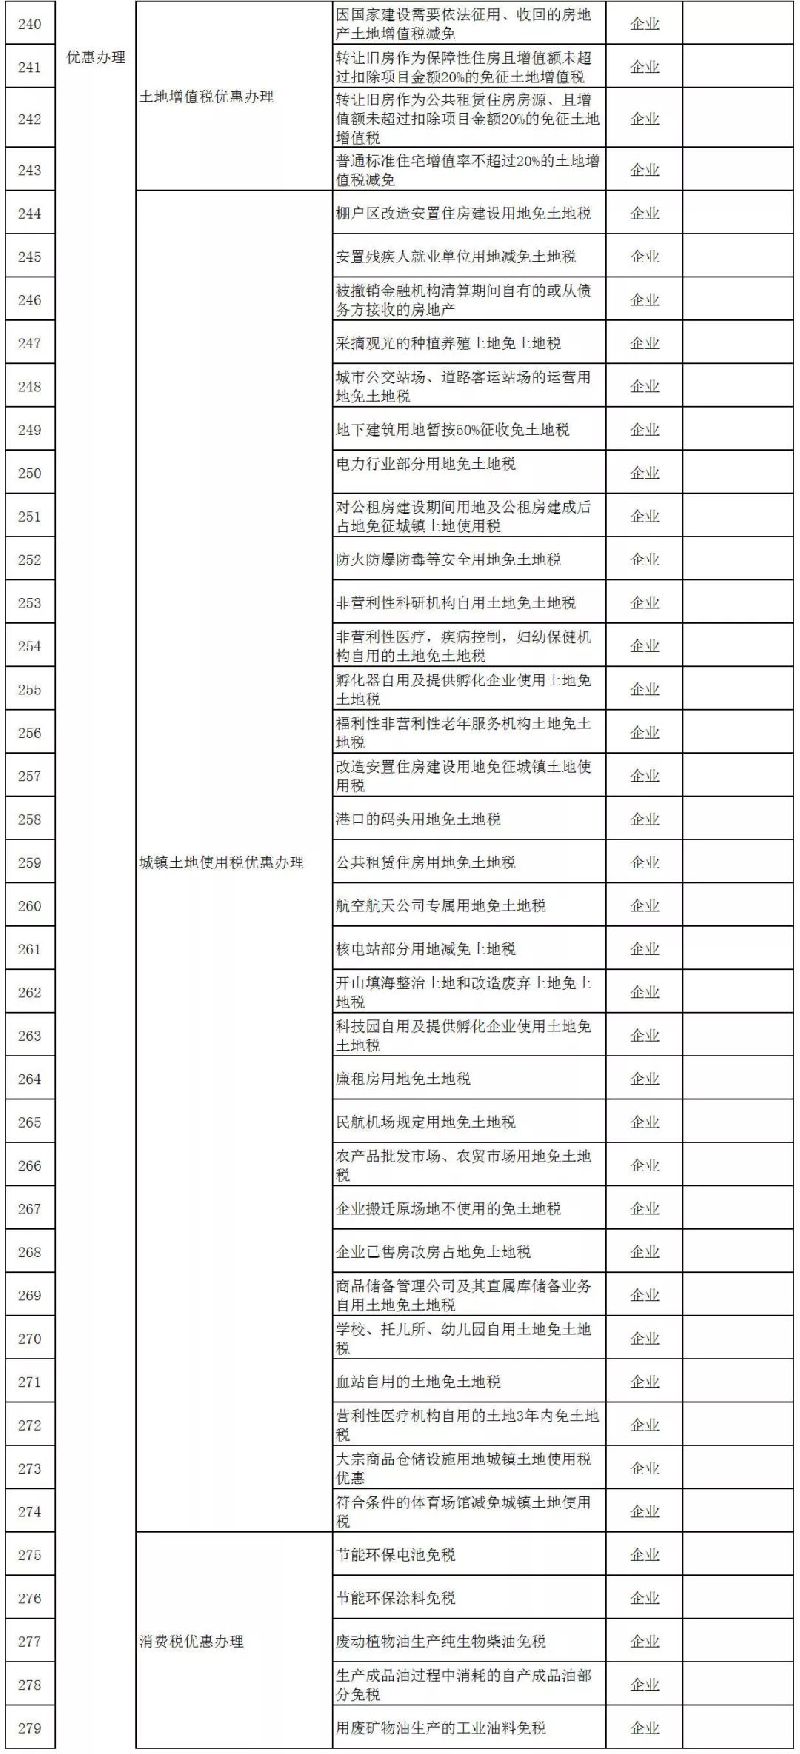 上海税务局370项办税事项可网上办理|附办事清